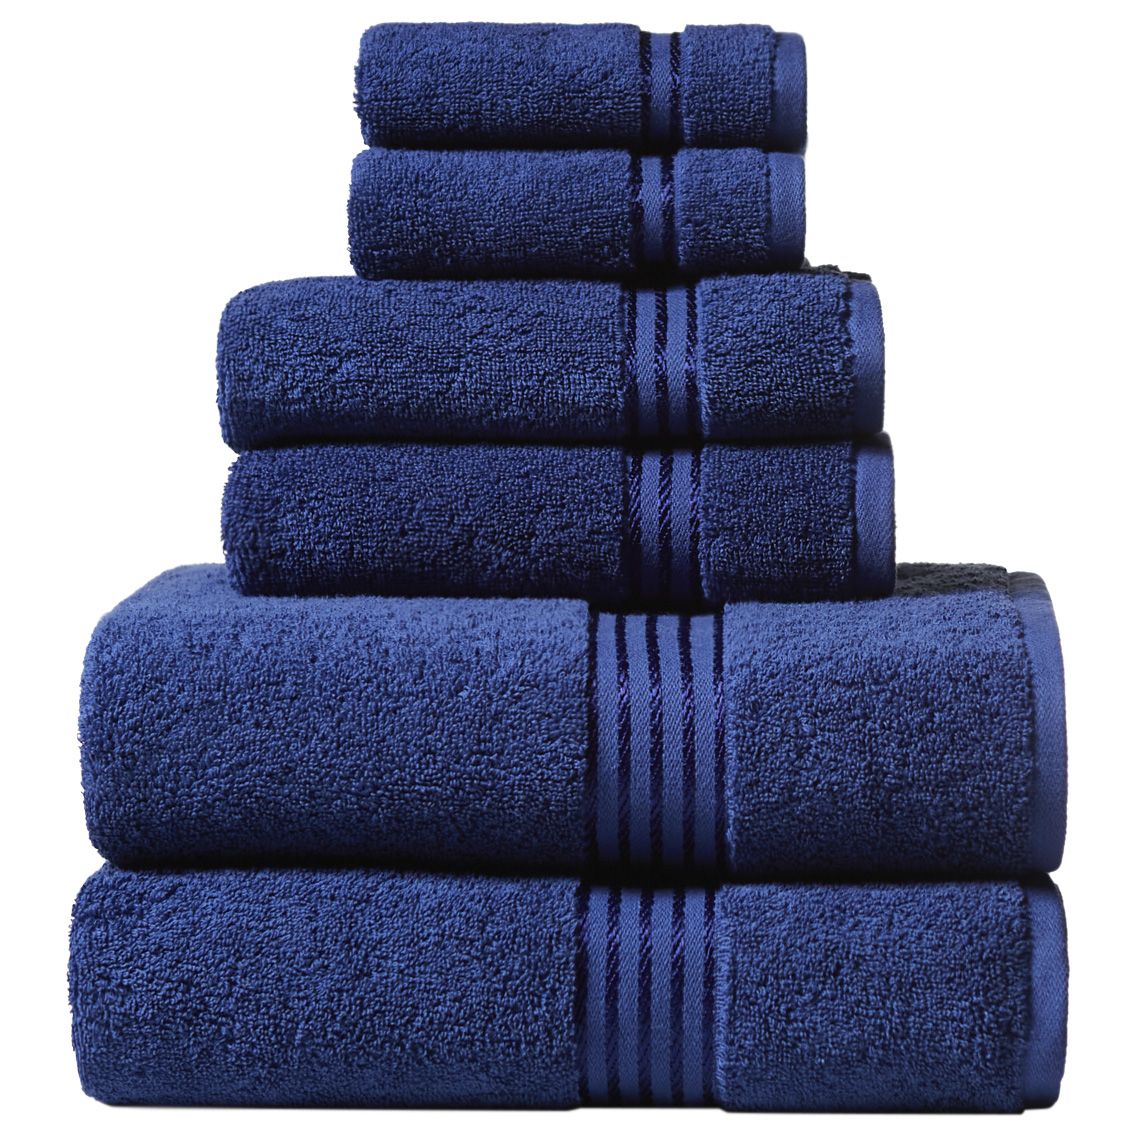 Towel Set 6 PC Set 100% Cotton 600 GSM 2 Bath 2 Hand 2 Wash Towels 